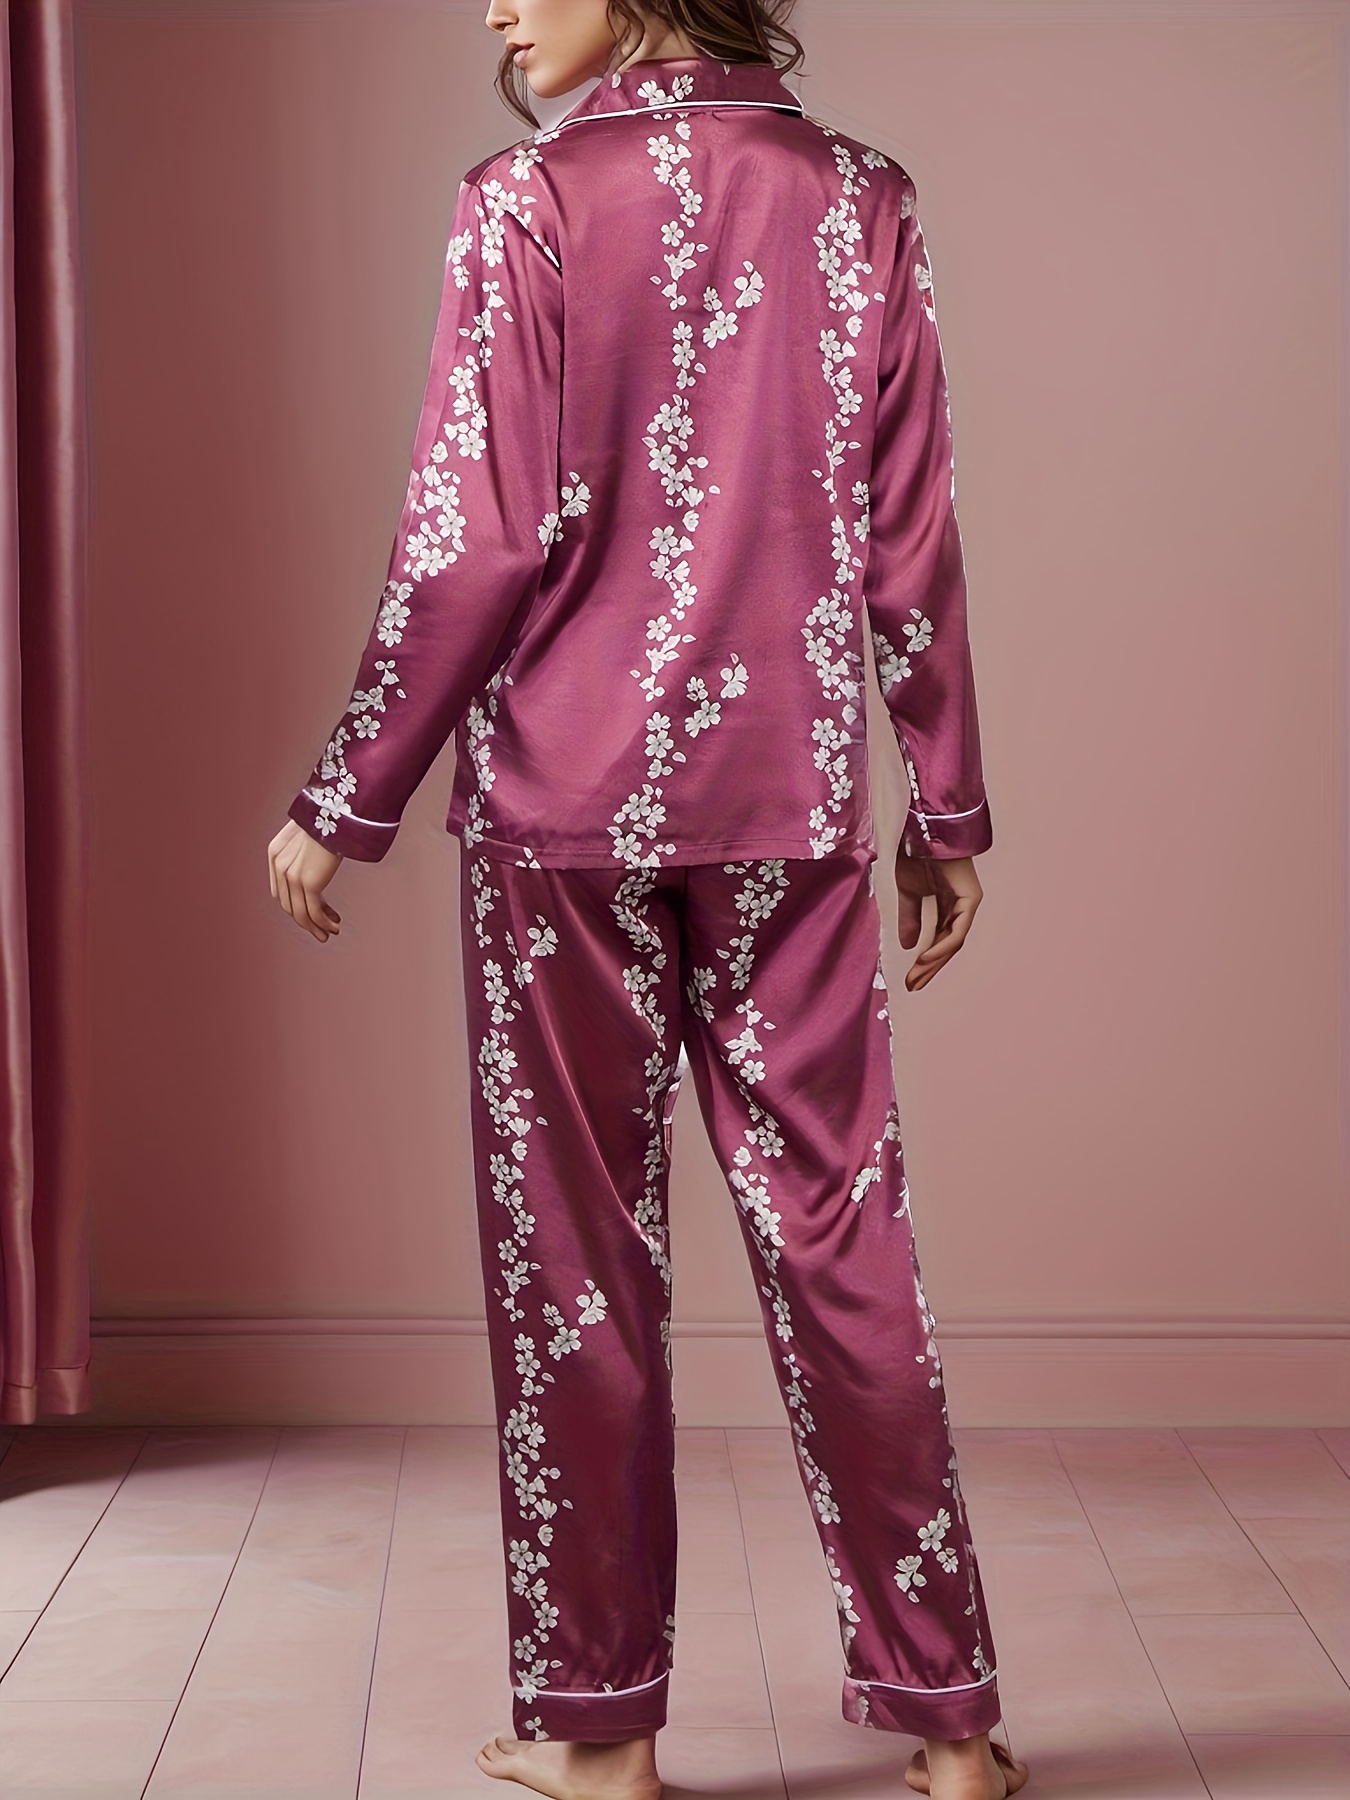 Women's Flower Sleepwear PJs Pink Floral Leaves Print Long Pajama Set Lounge